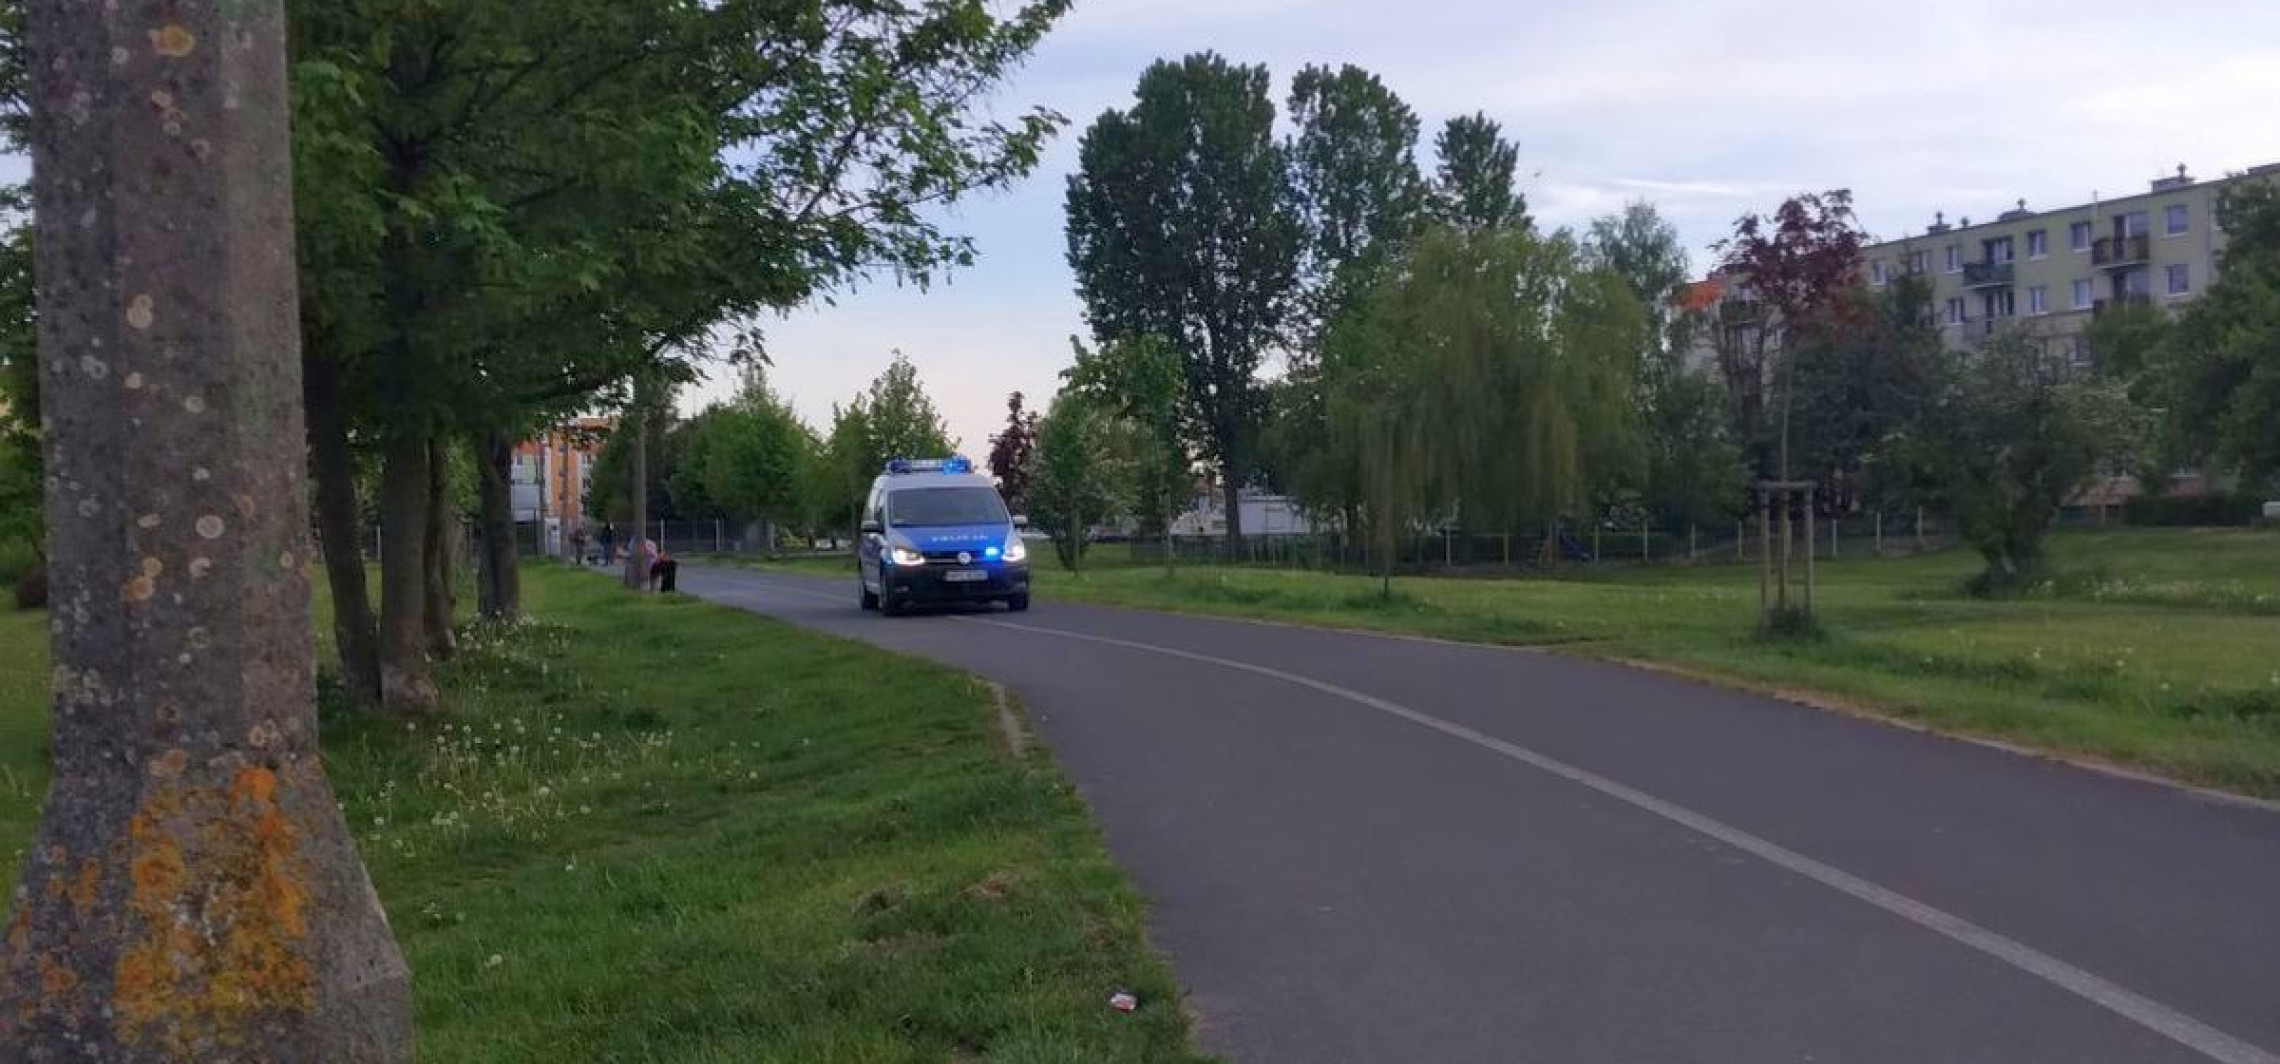 Inowrocław - Co policja robiła wczoraj przy rąbińskiej Kauli?